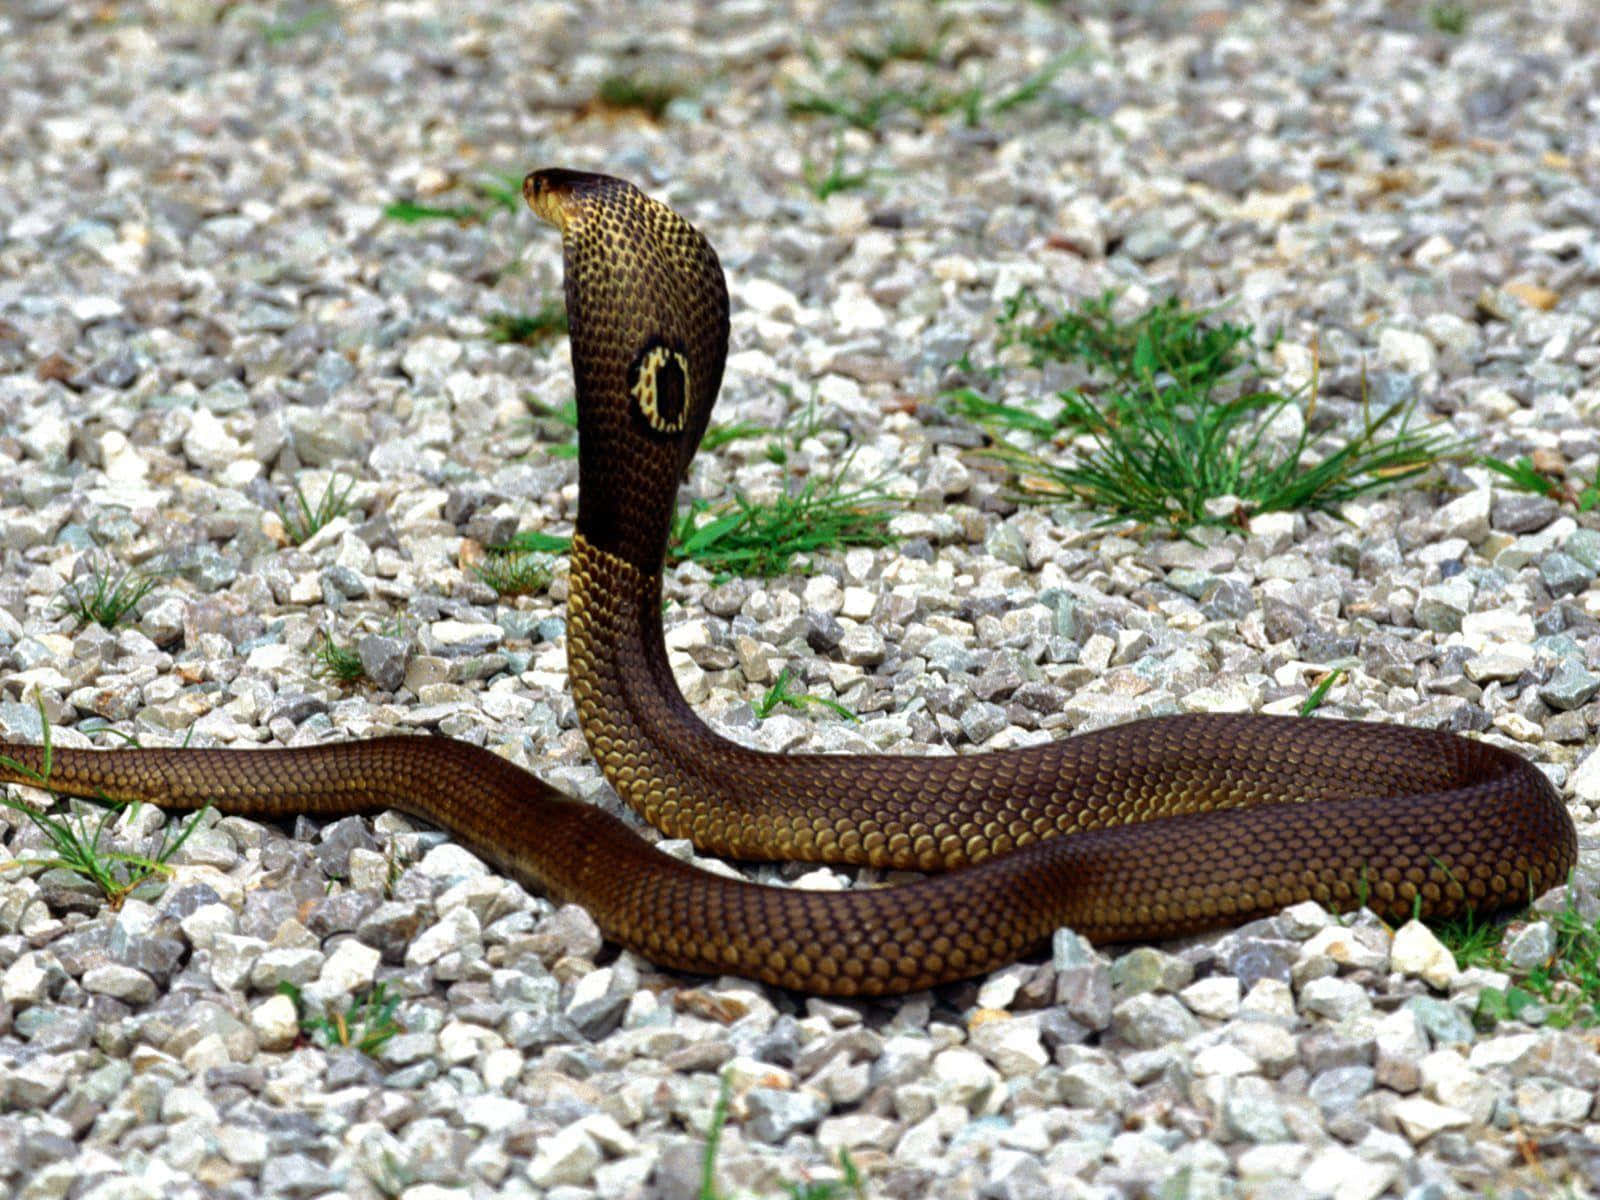 "Hissing Cobra Snake"